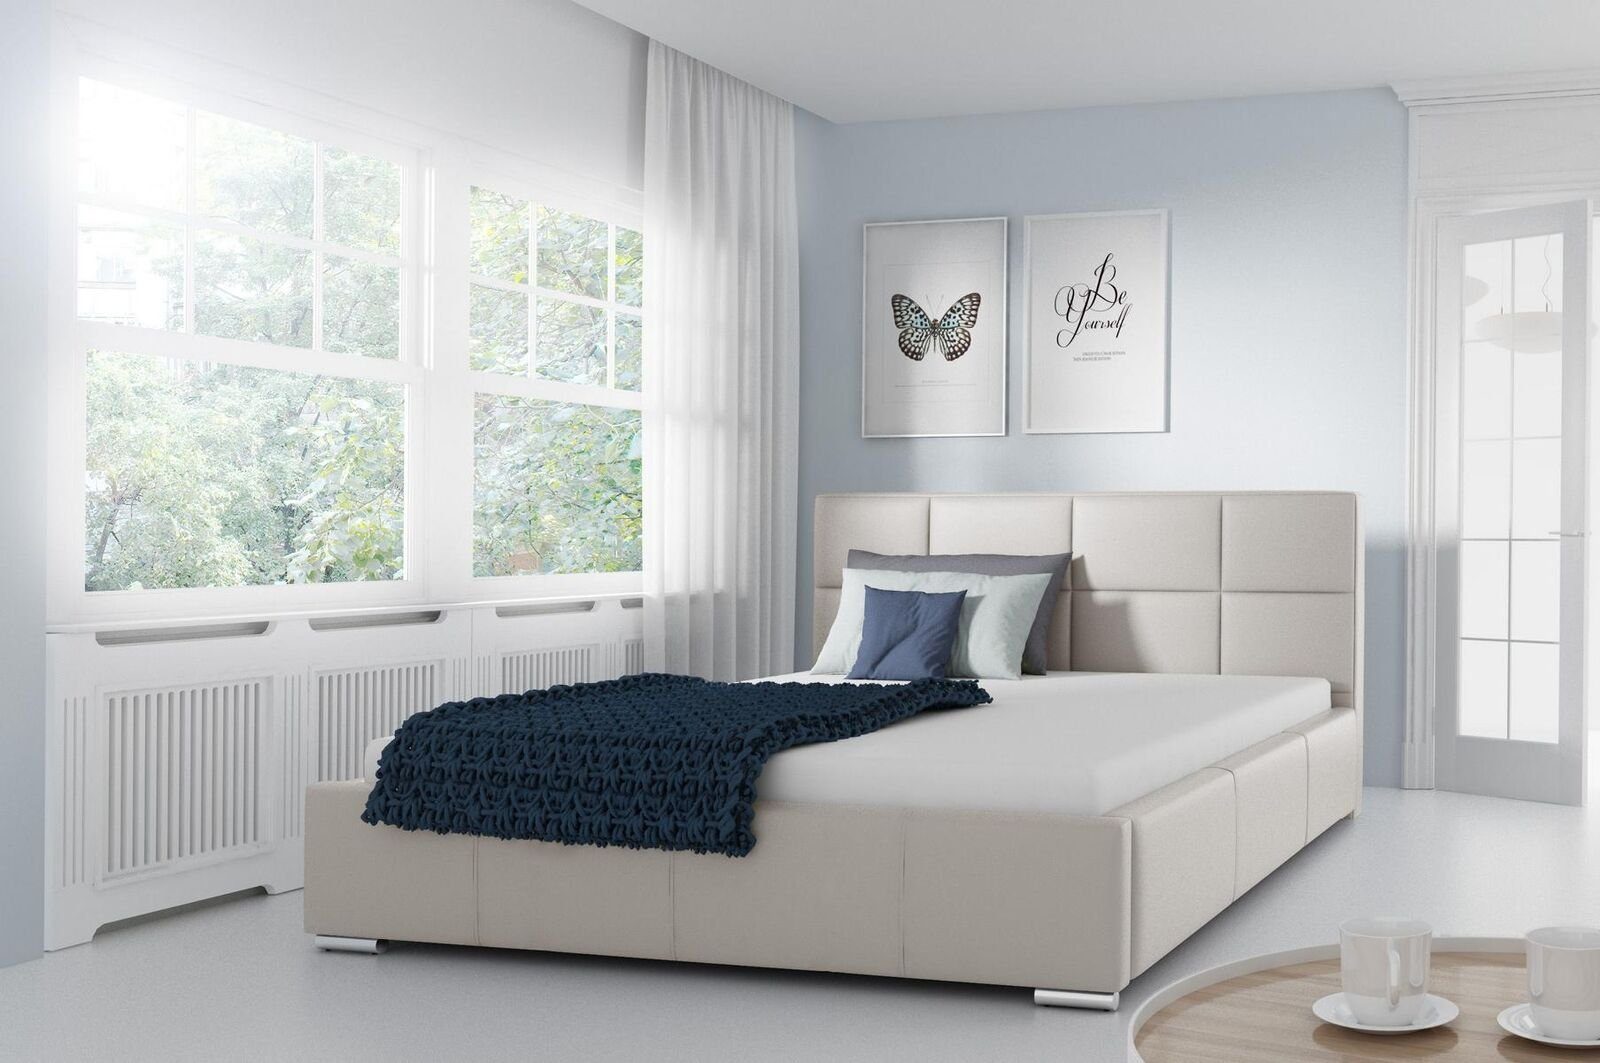 JVmoebel Lederbett, Doppel Bett Gepolsterte Design Luxus Möbel 200x200 Bettrahmen Weiß